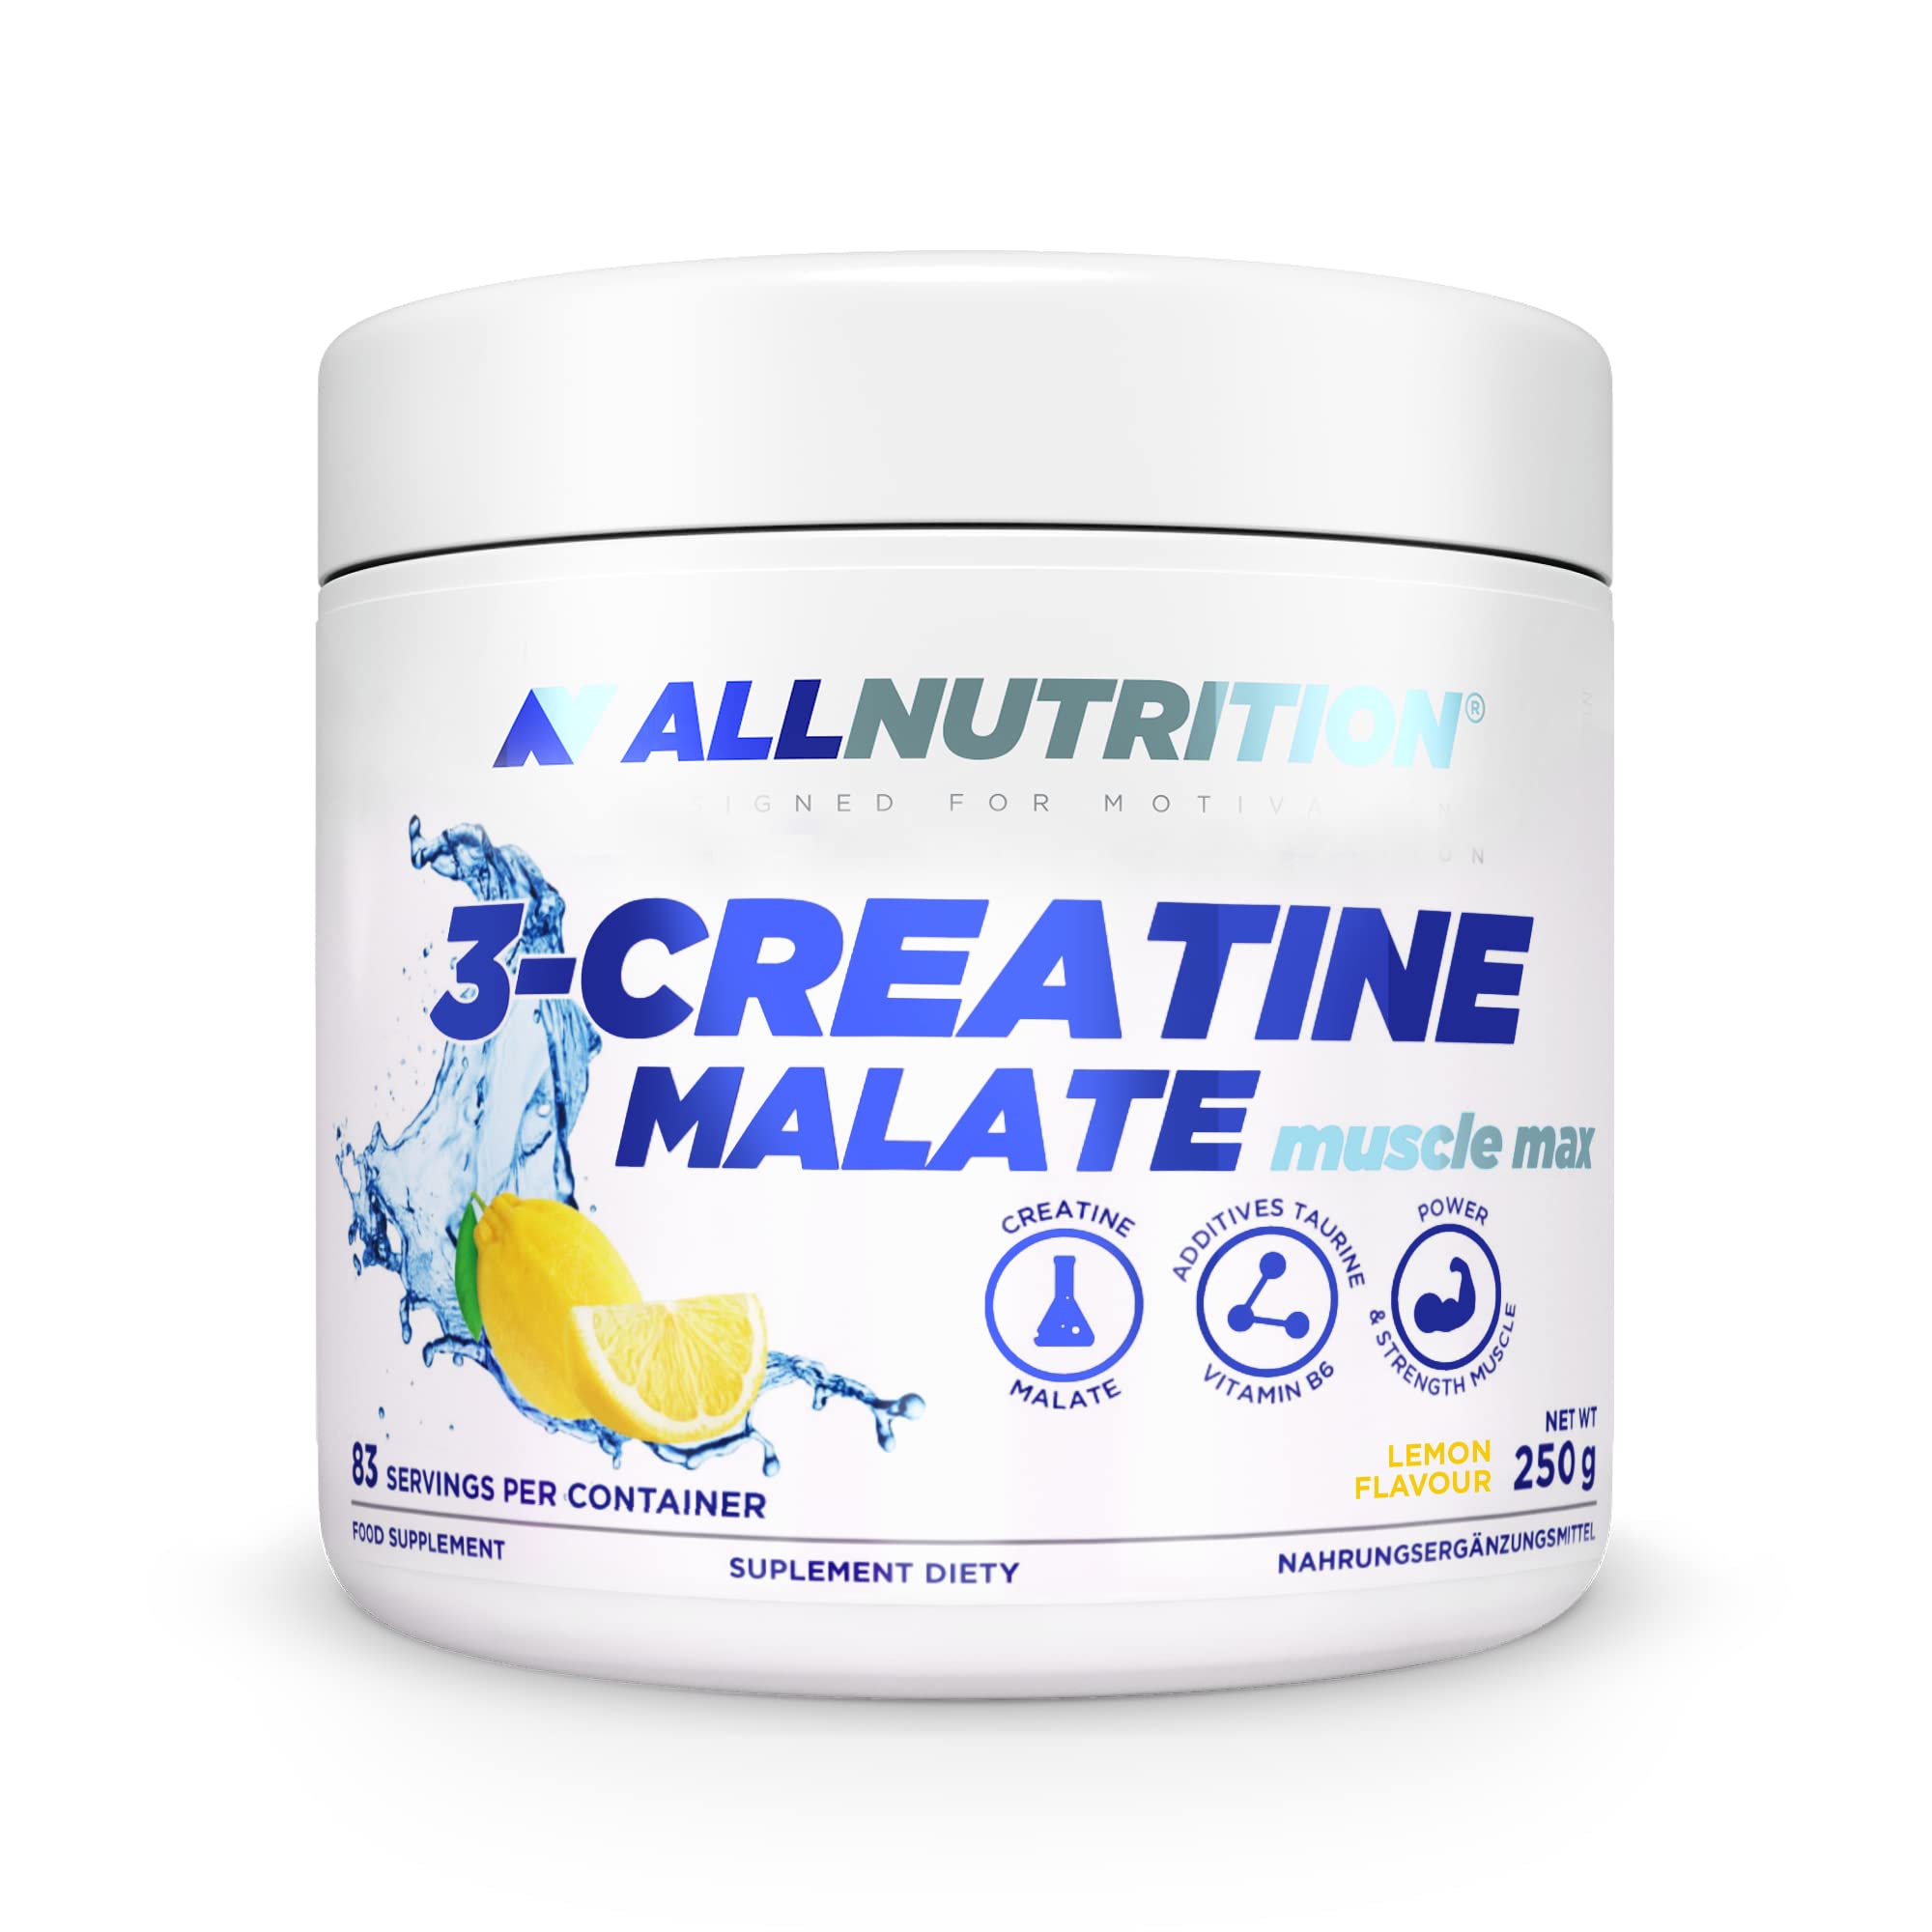 ALLNUTRITION Tri Creatine Malate Powder Supplement - Kreatin Monohydrat & Apfelsäure mit Taurin & Vitamin B6 - Leistungssteigerung und Muskelregeneration - 250g - Lemon